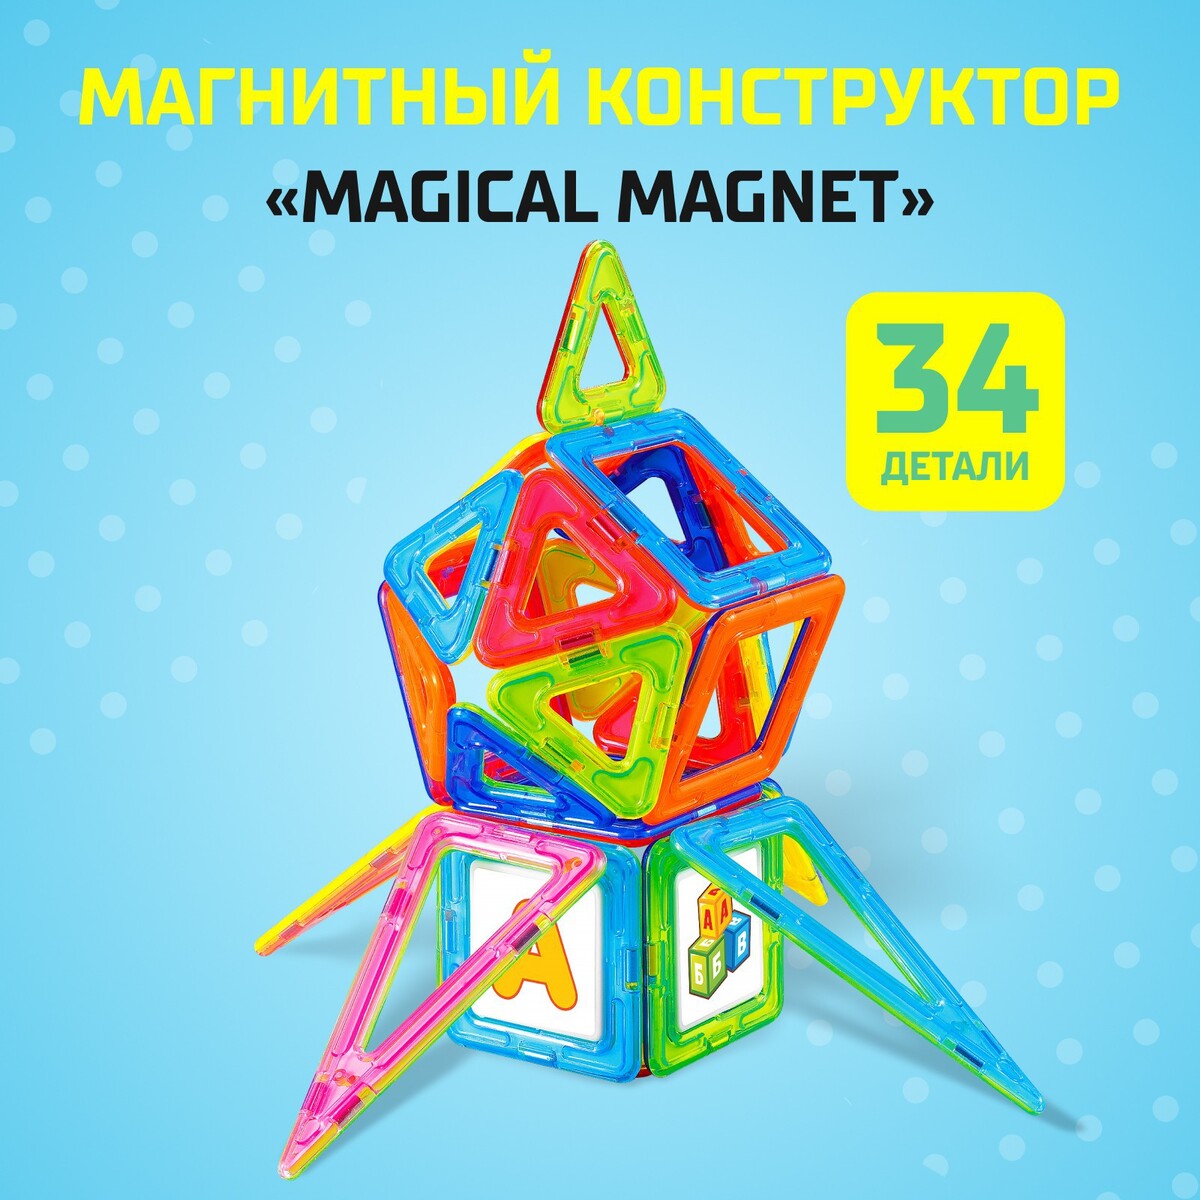 Магнитный конструктор magical magnet, 34 детали, детали матовые конструктор магнитный 44 детали арт hd002